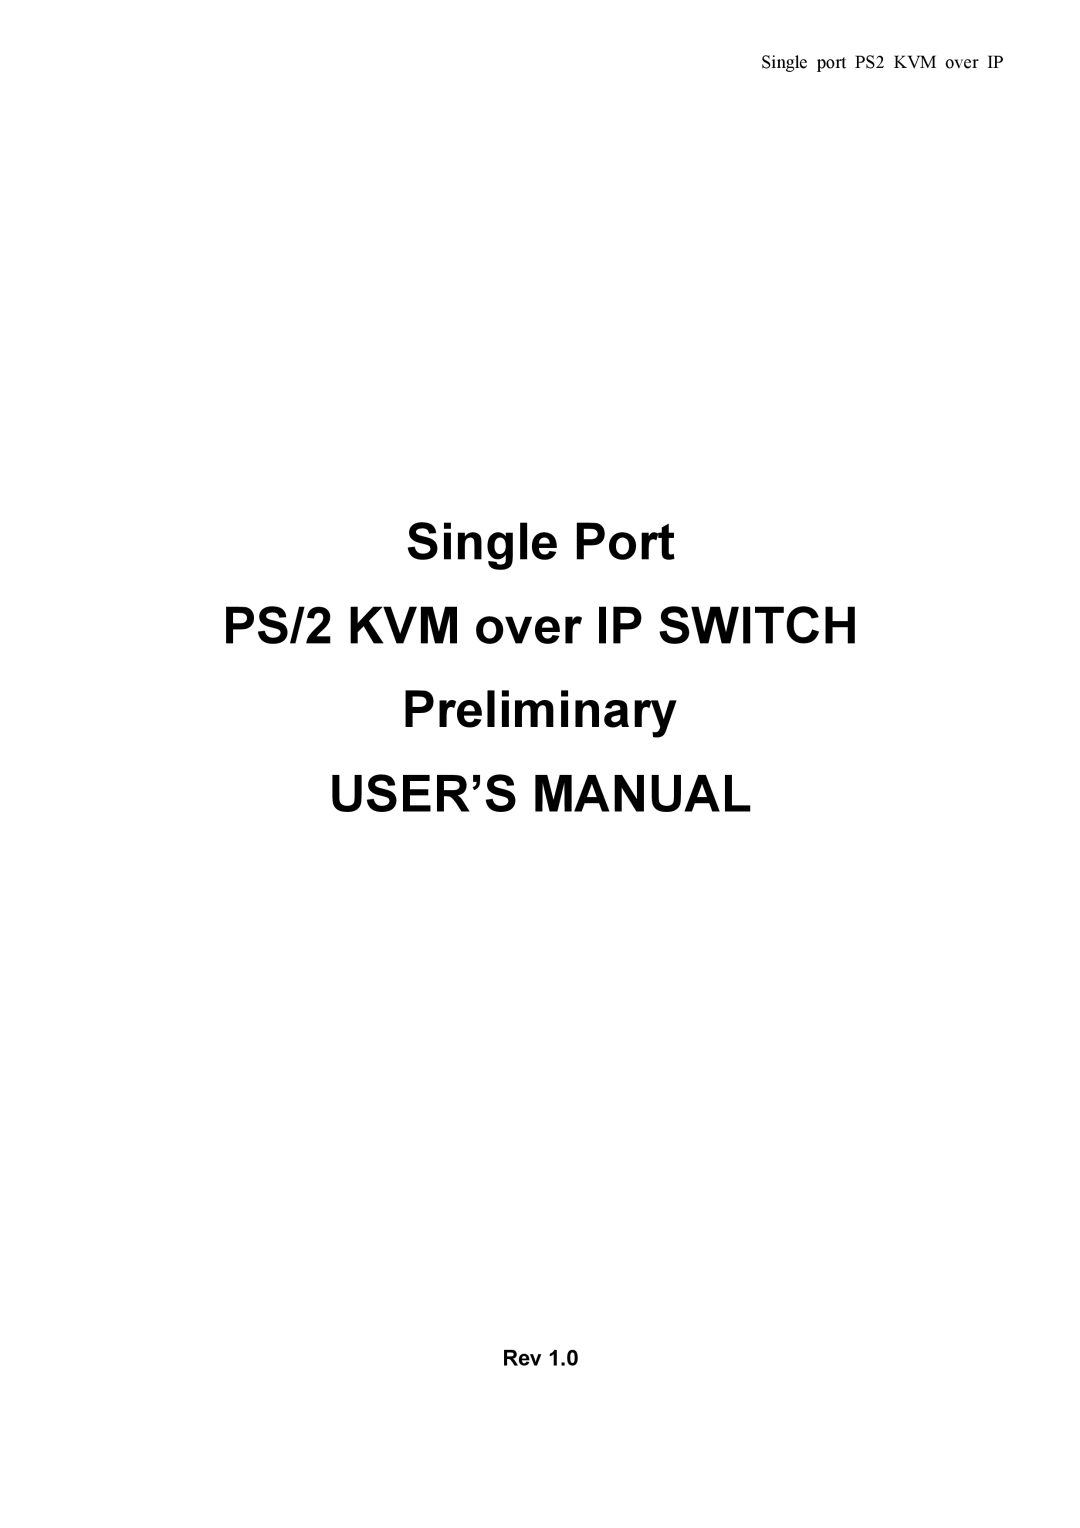 Avocent PS/2 KVM manual USER’S Manual, Rev 